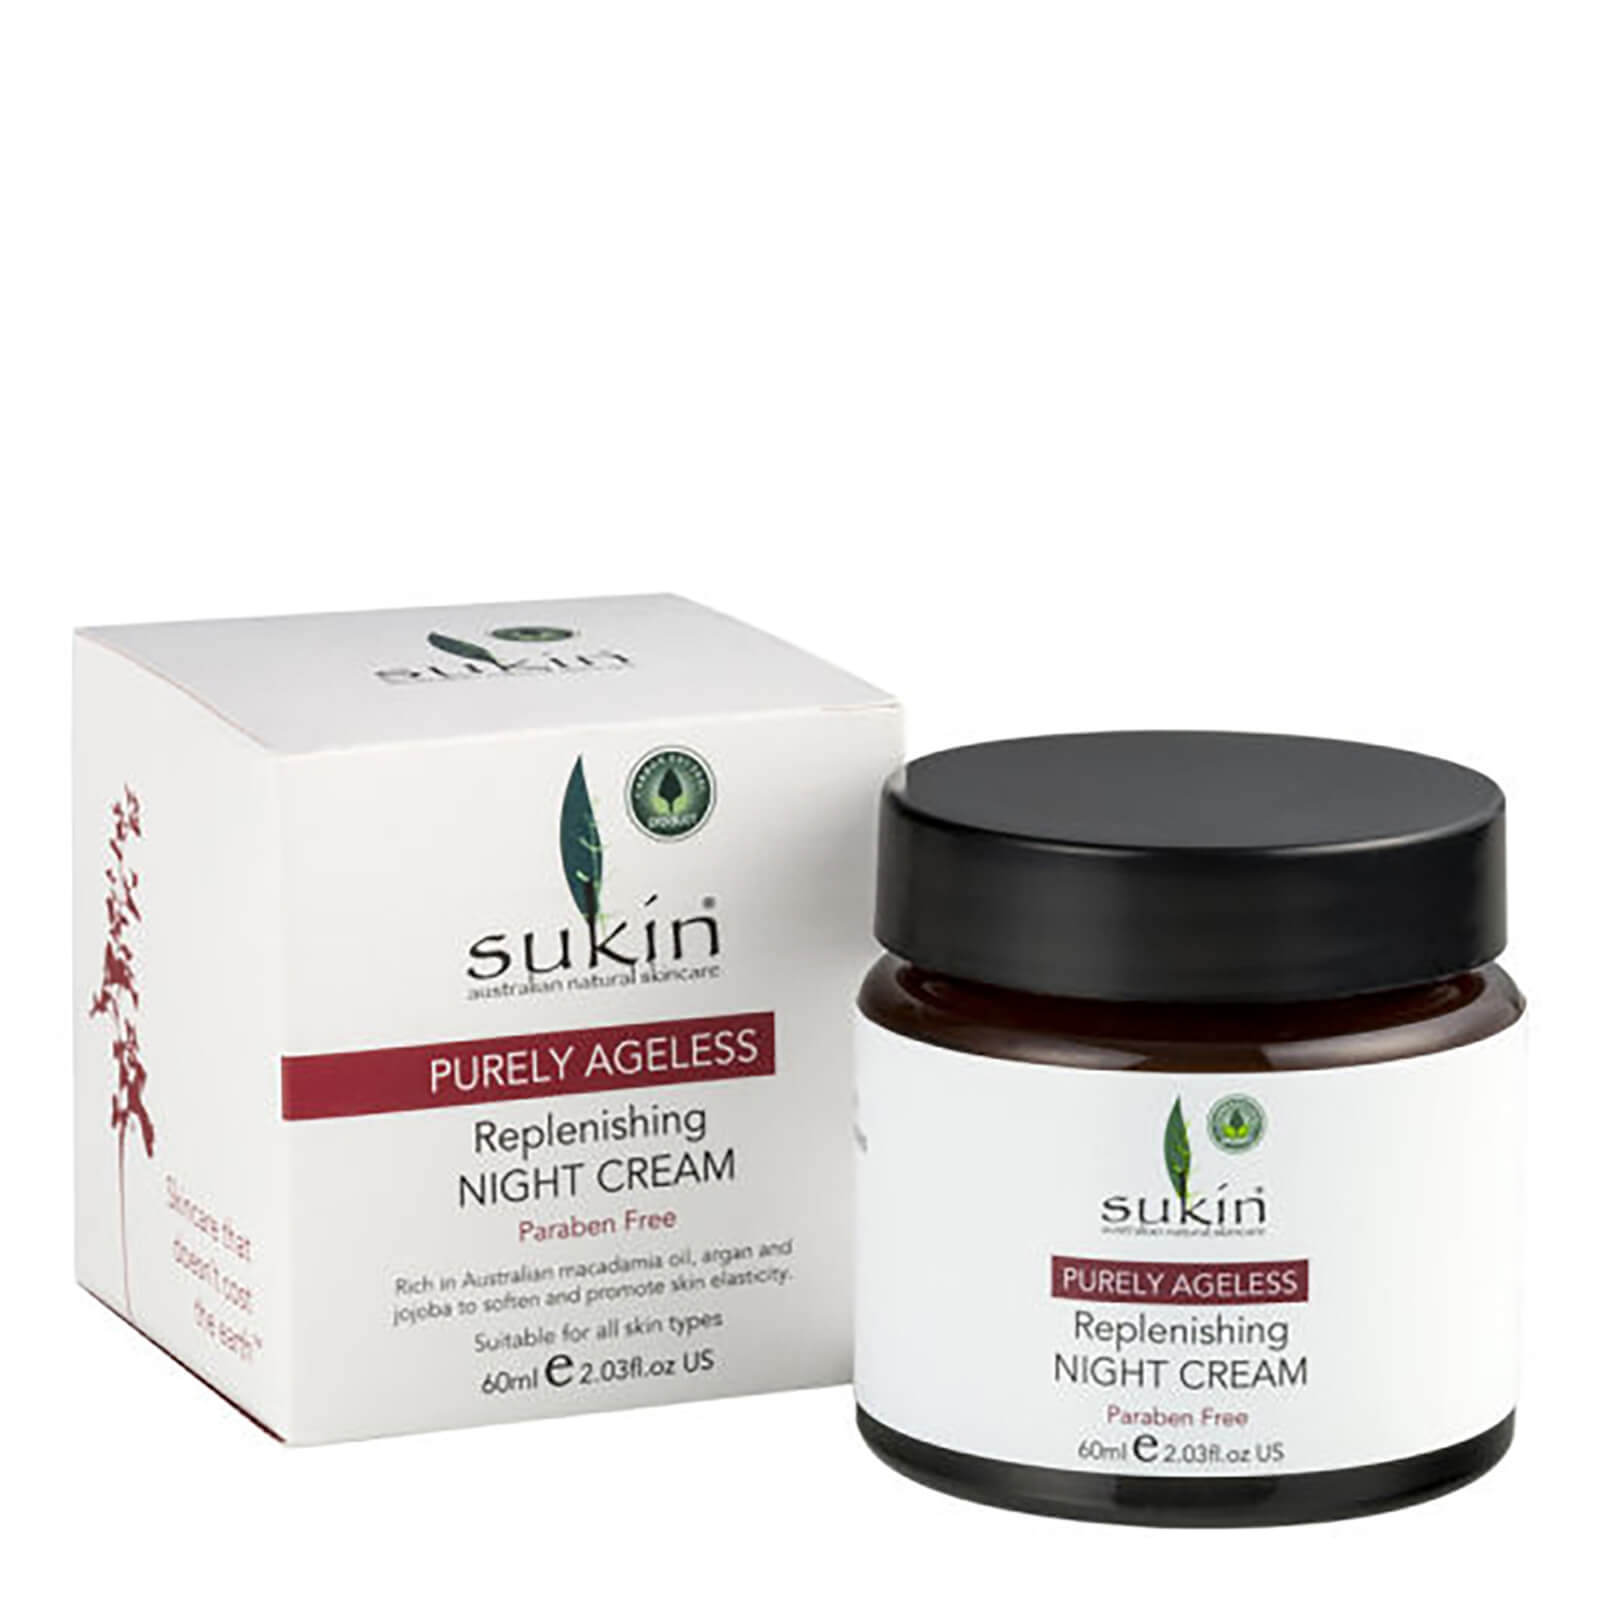 Crema regeneradora nocturna de Sukin (60 ml)